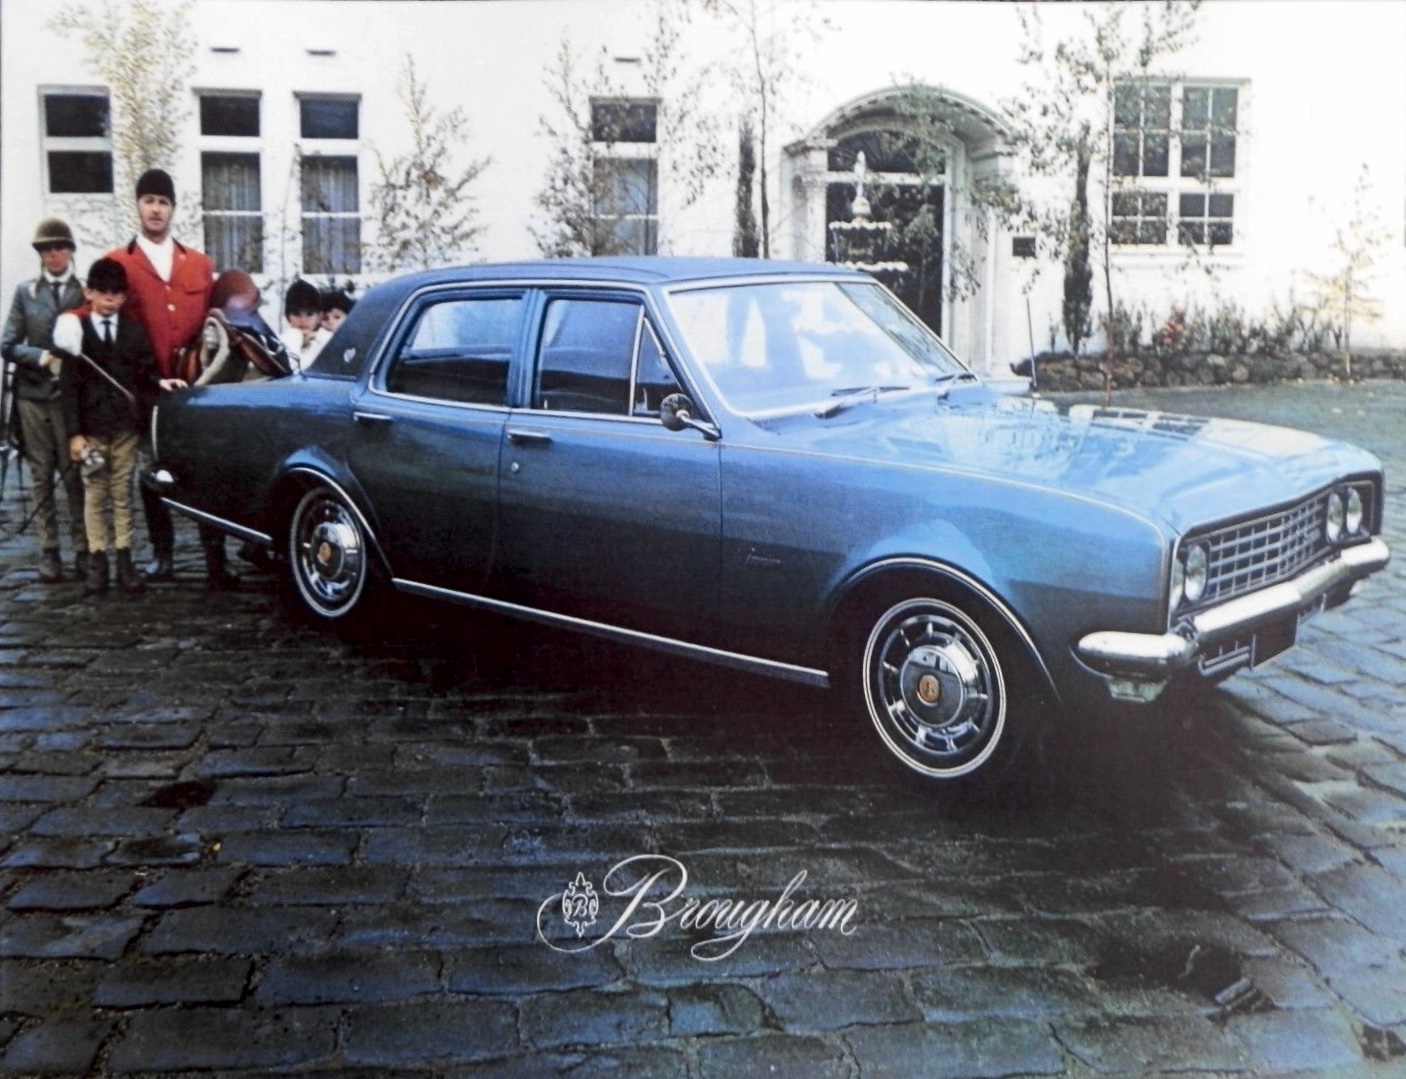 1970 HG Holden Brougham Brochure